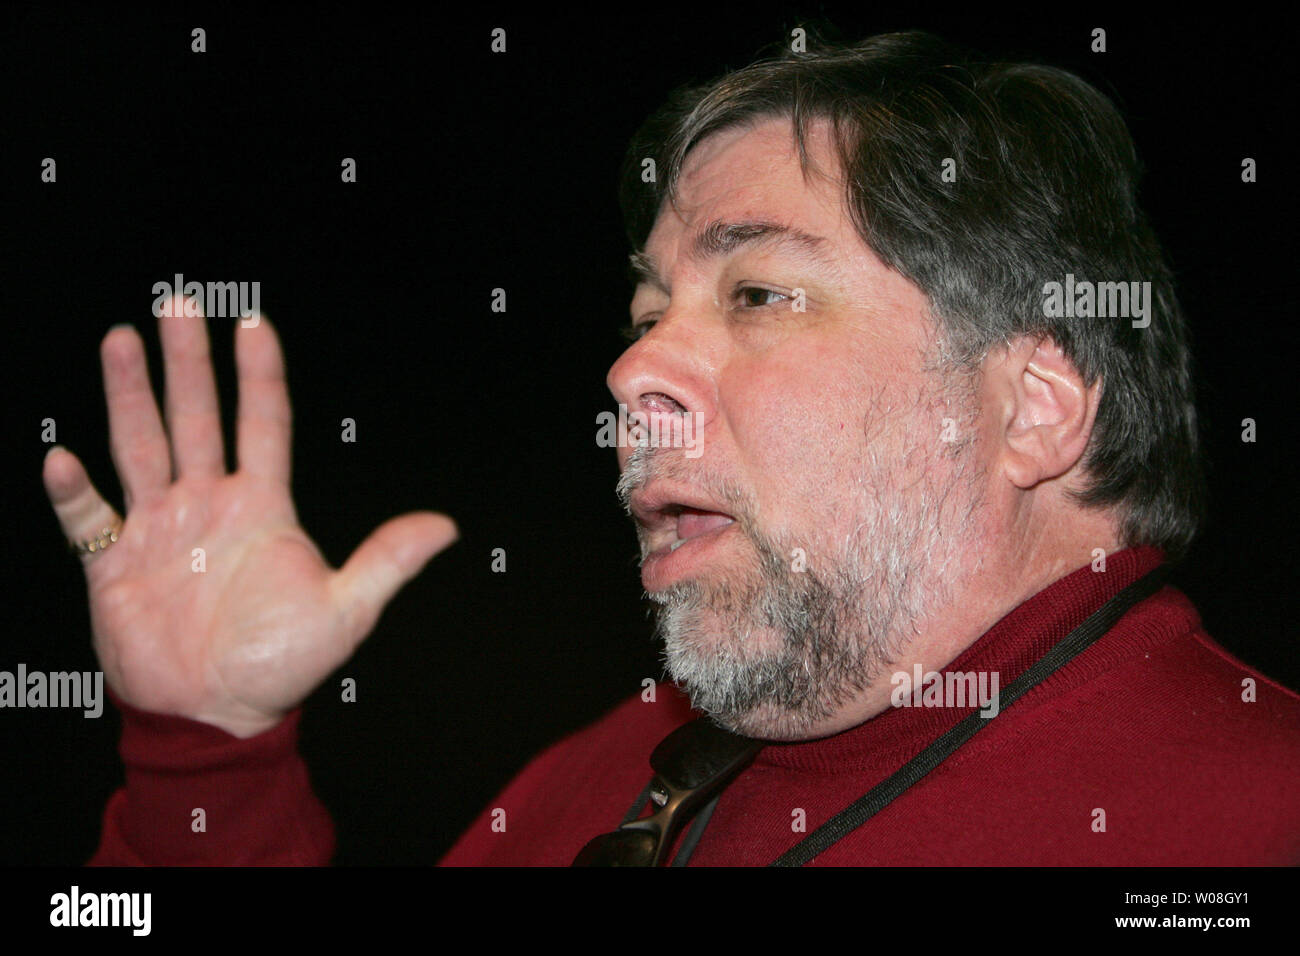 Steve Wozniak, einer der Gründer von Apple Computer, Antworten auf der Macworld in San Francisco am 9. Januar 2007. (UPI Foto/Terry Schmitt) Stockfoto